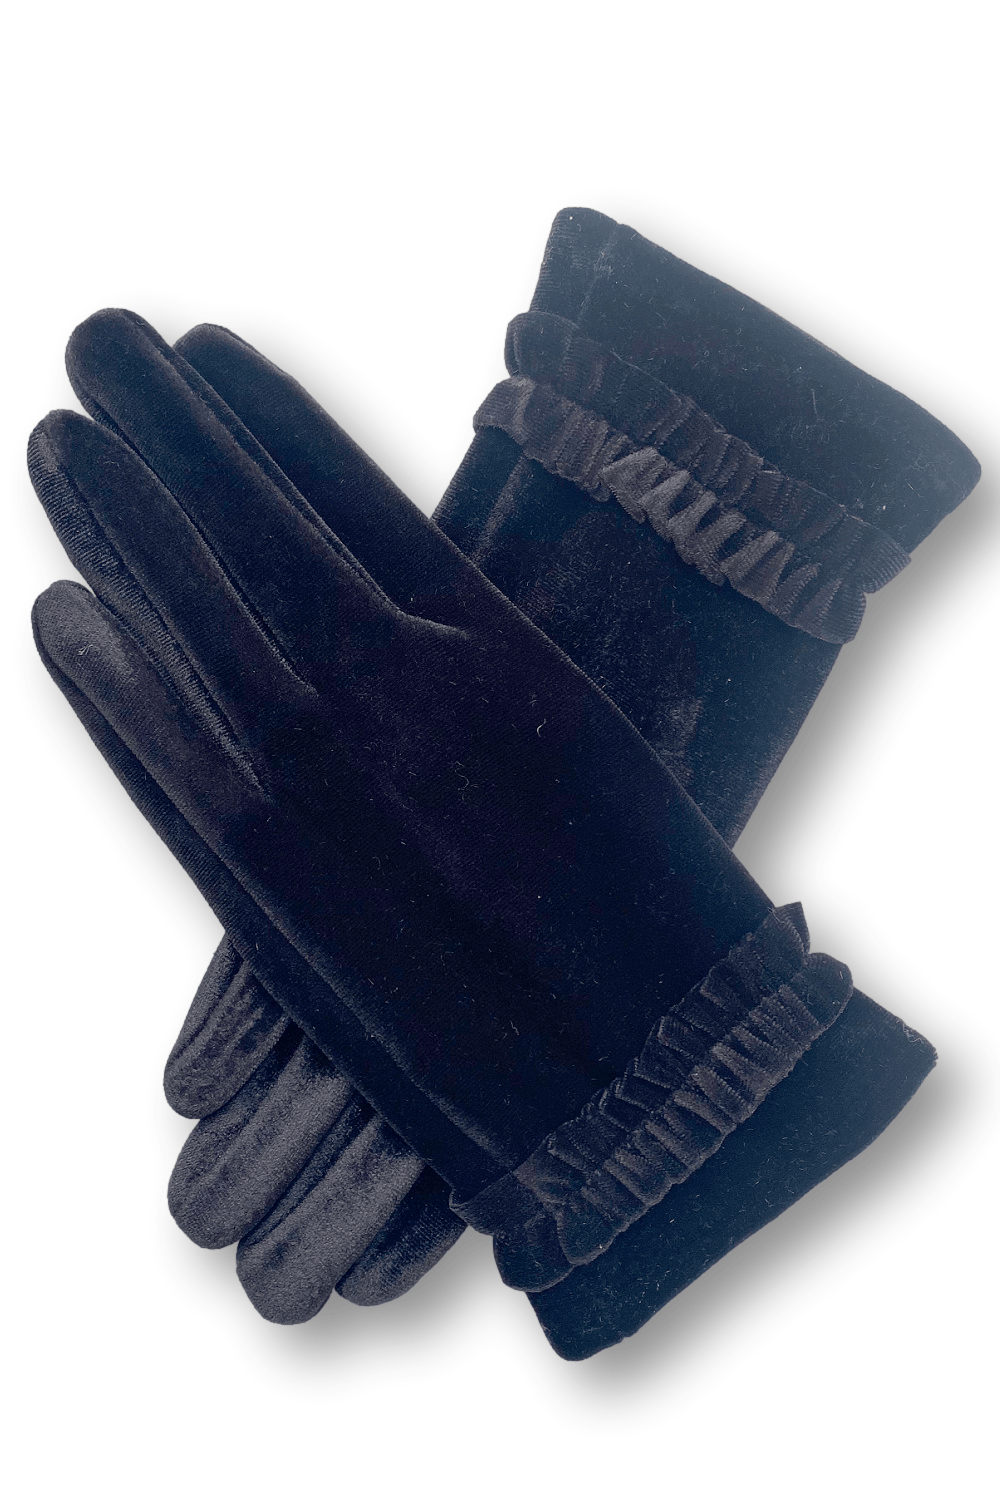 Feminine velvet women's gloves with small wrist ruffle.